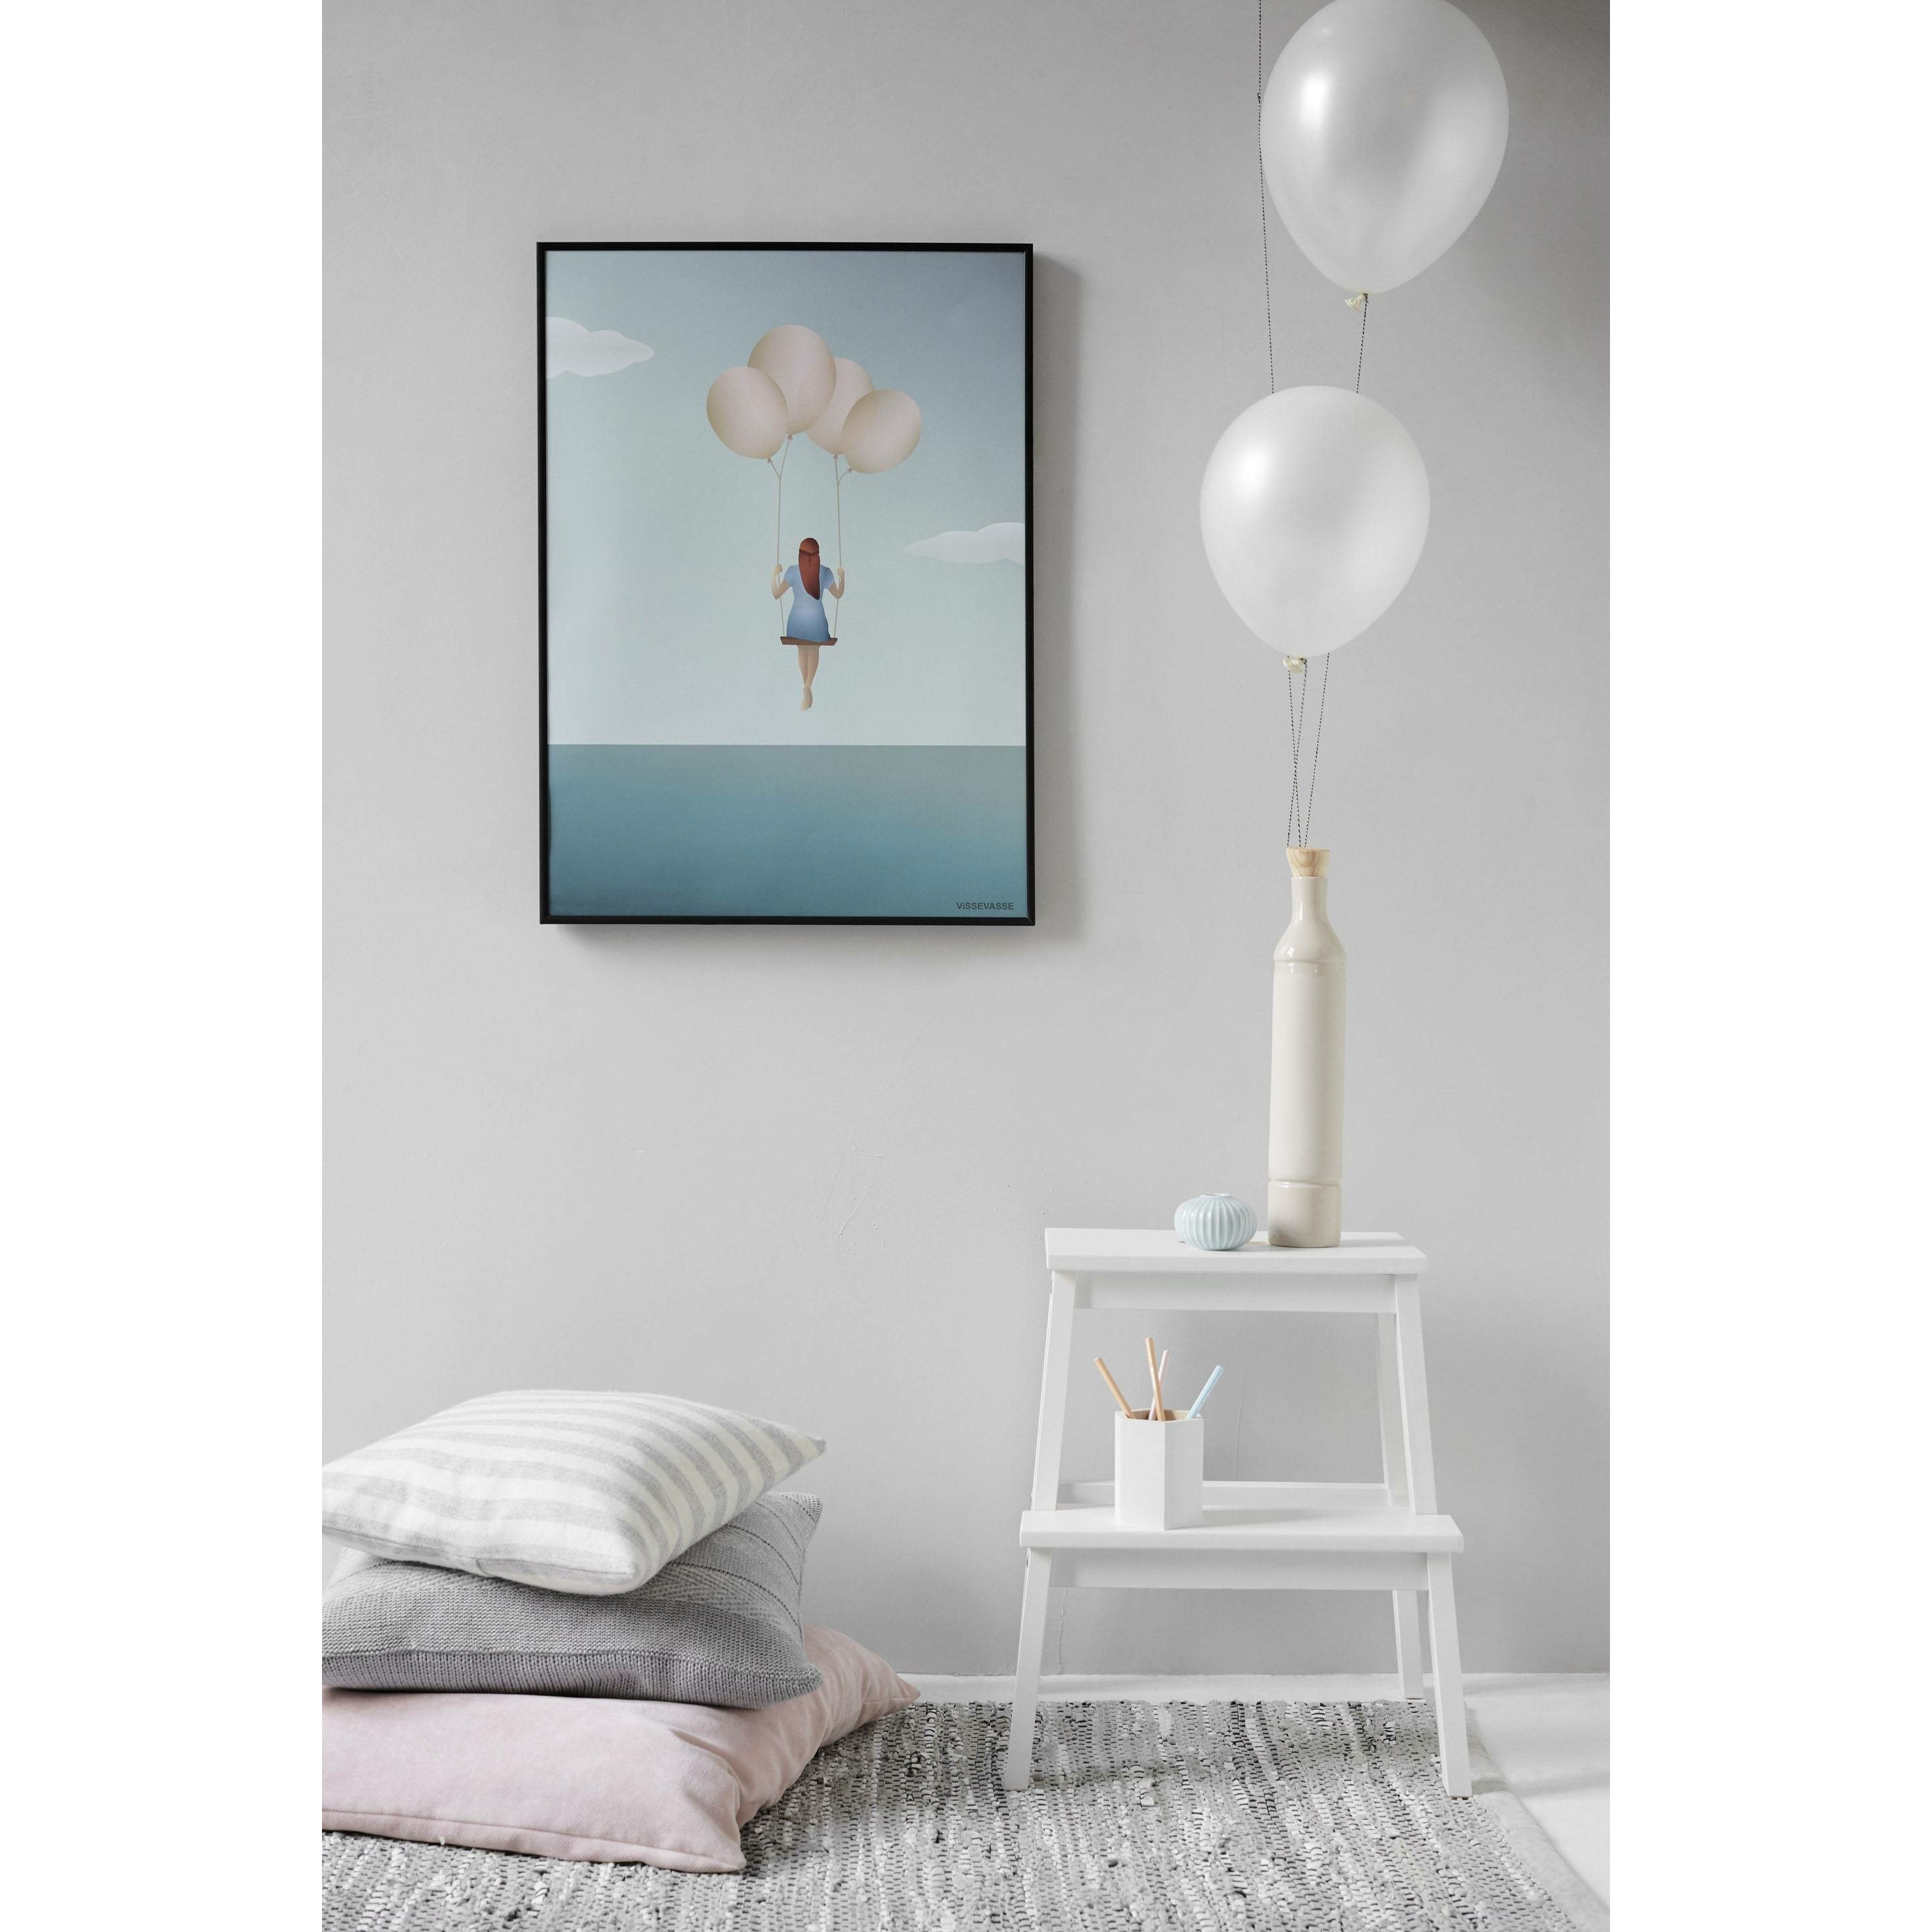 Poster da sogno di Vissevasse Balloon, 30 x40 cm